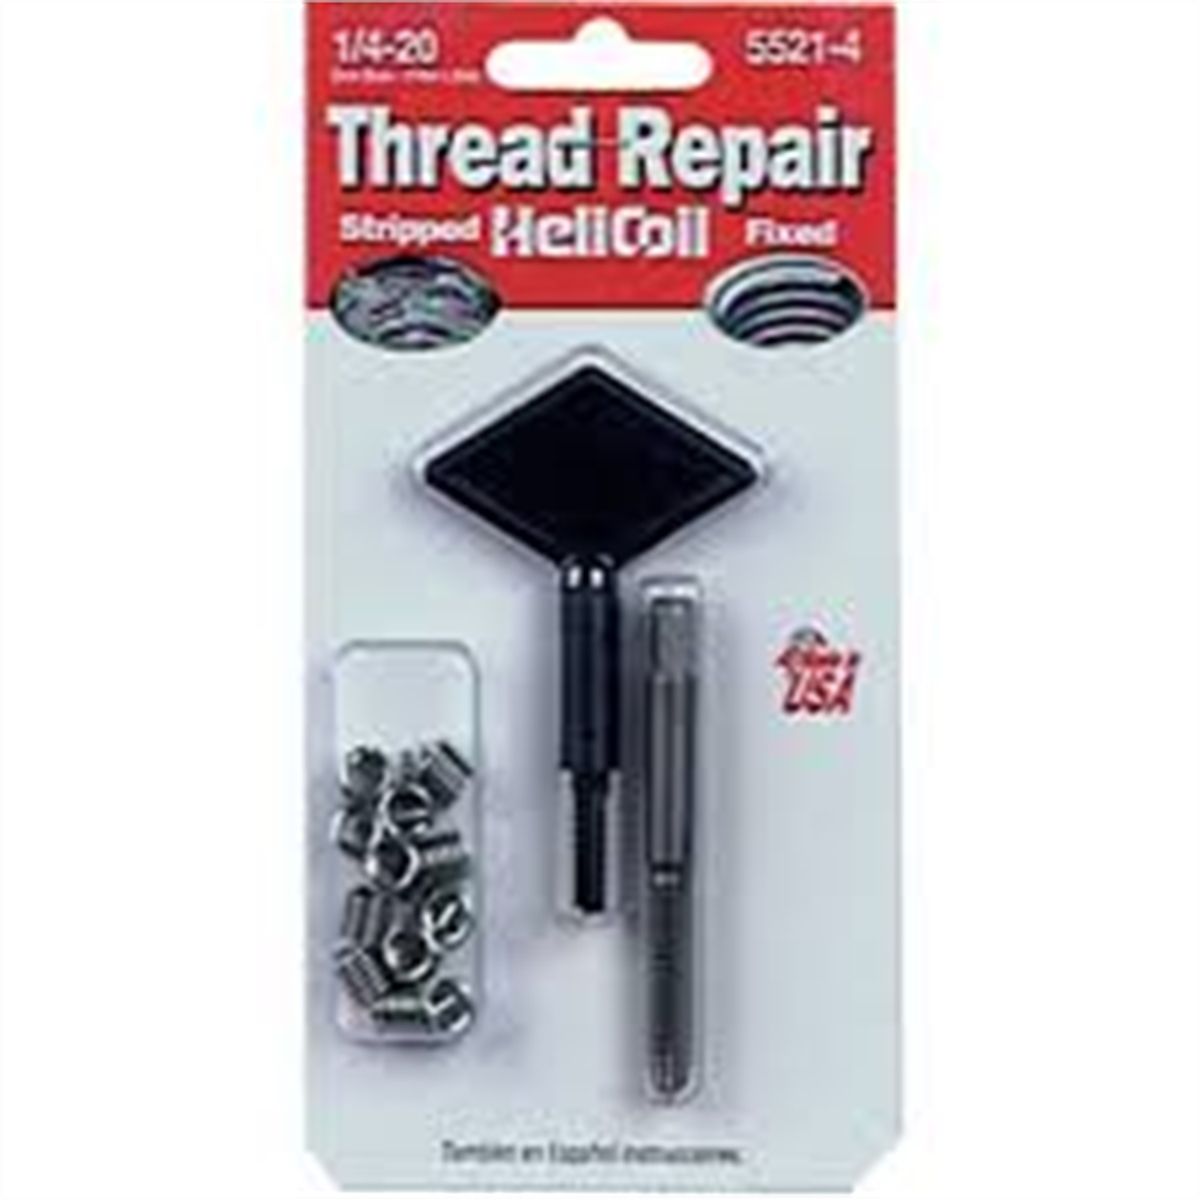 Helicoil Master Thread Repair Kit  1/4 through 1/2" Fine Thread 